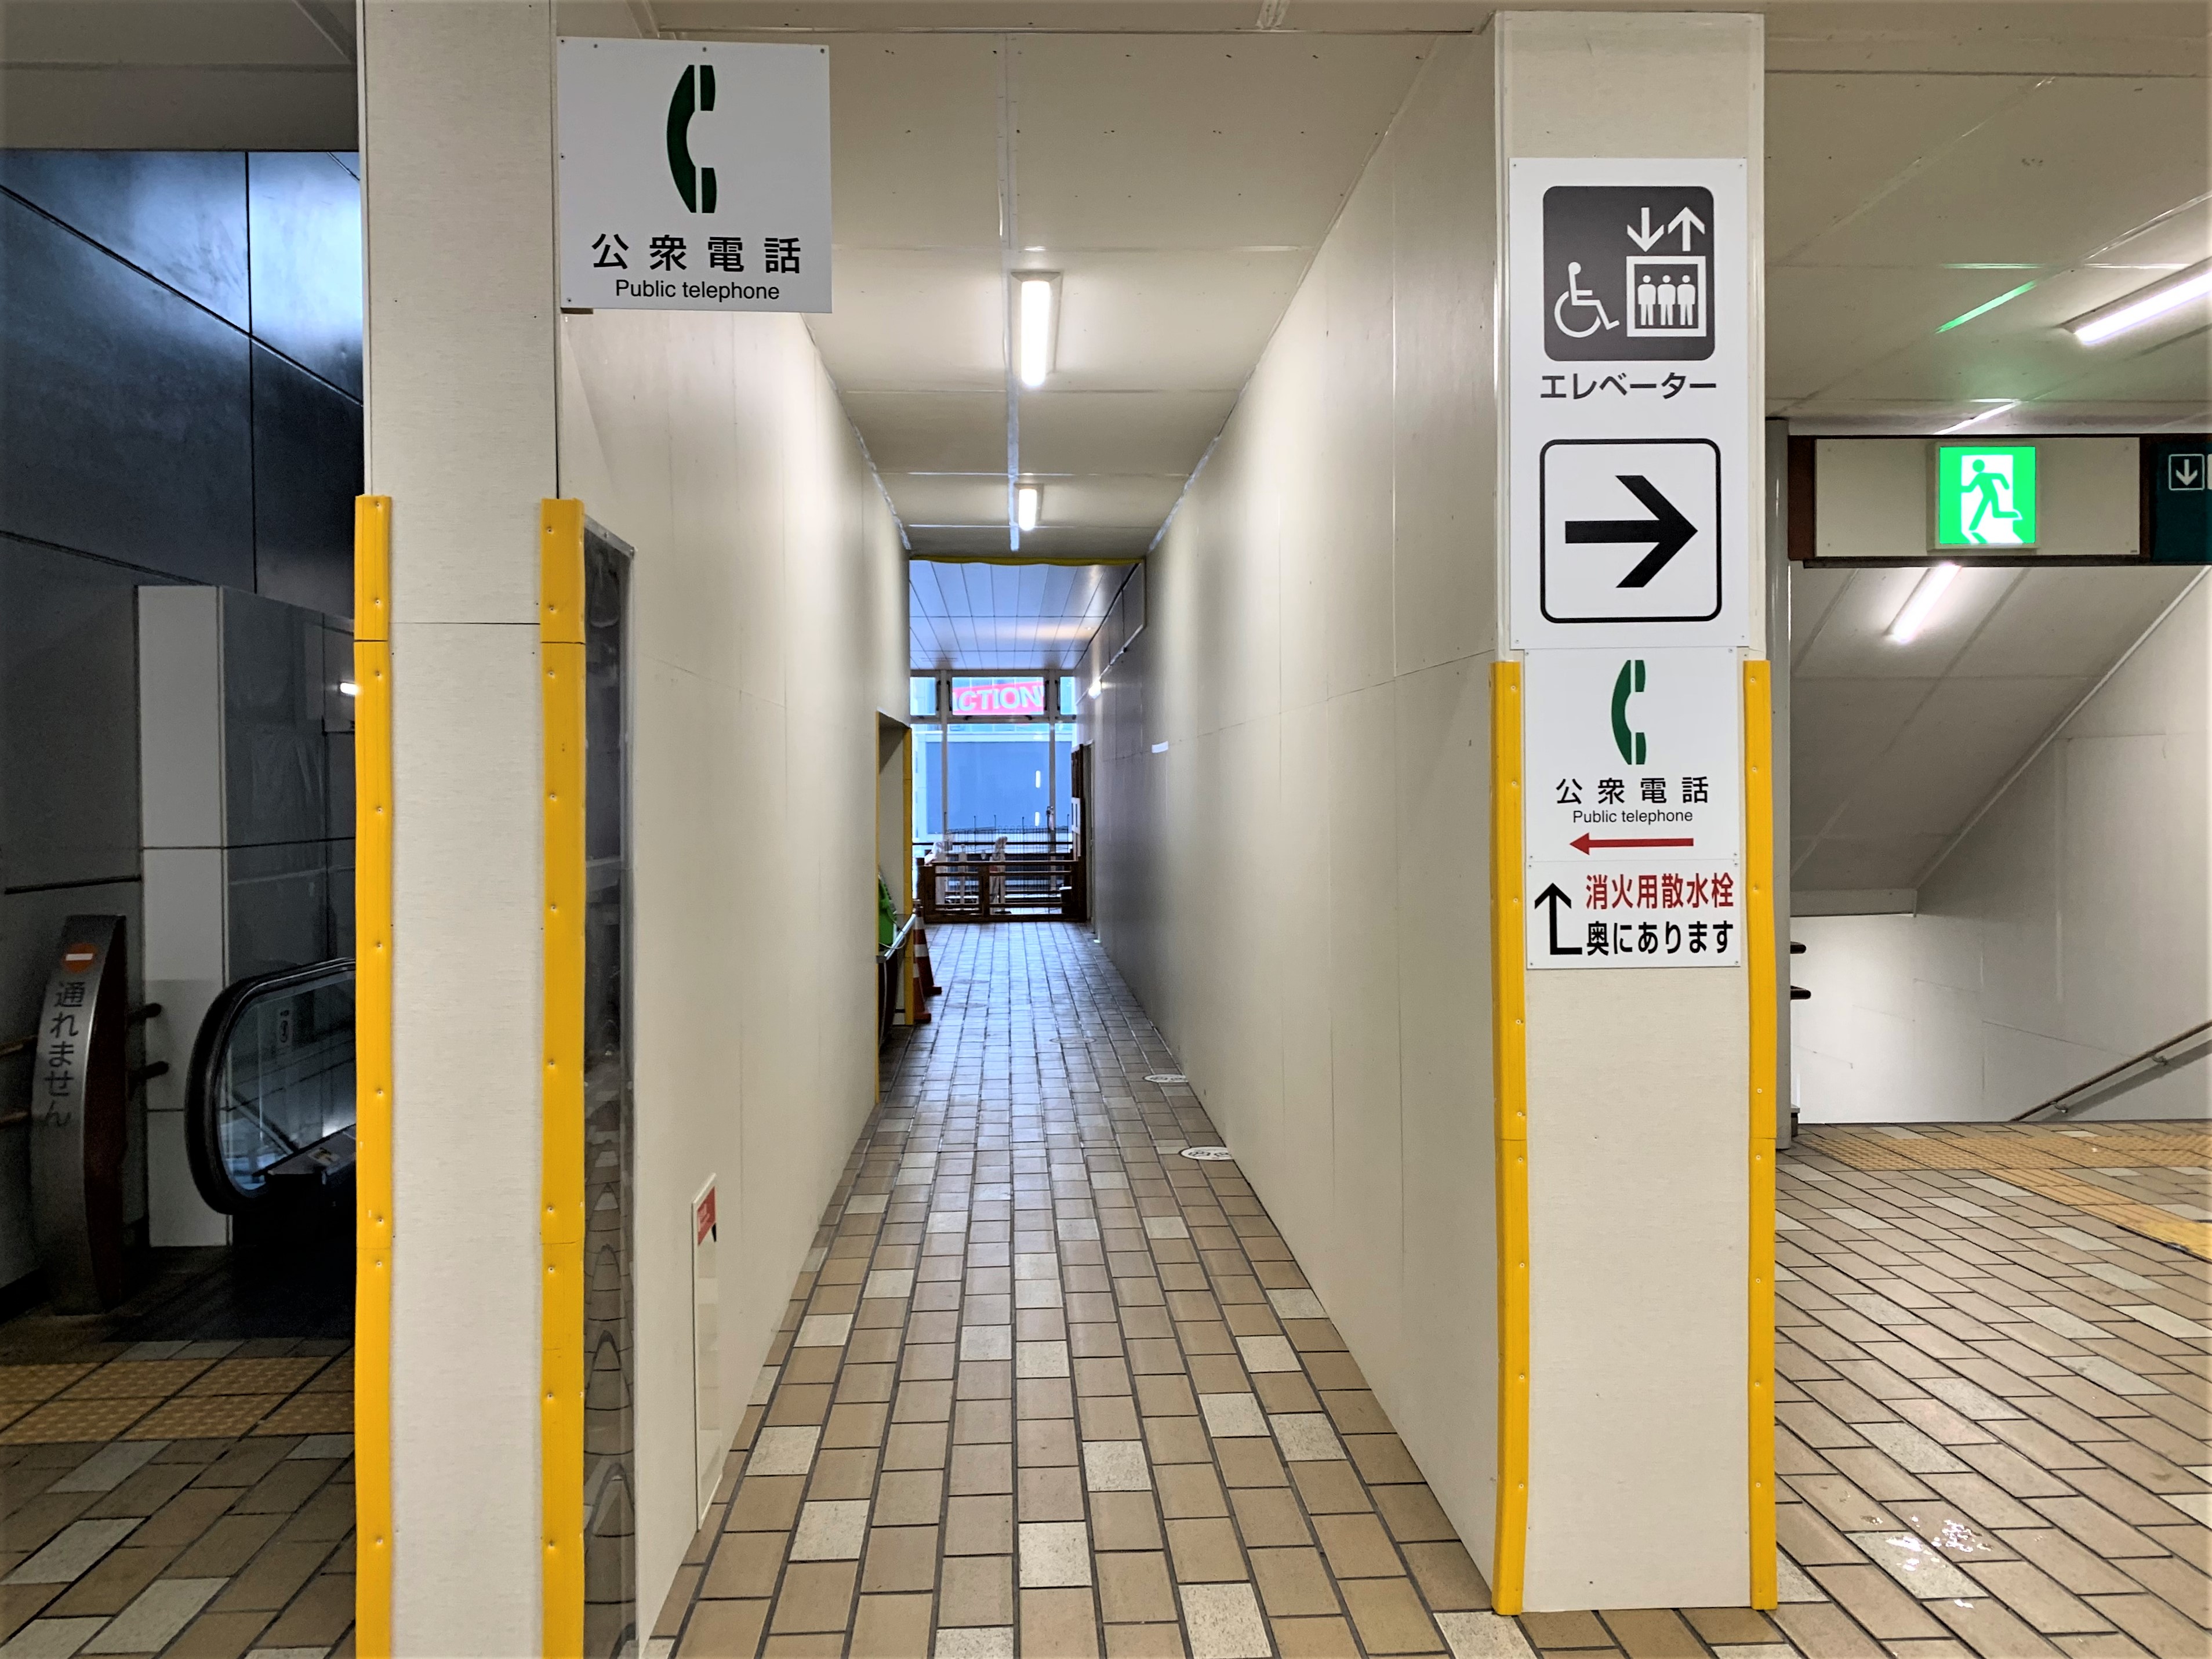 2022年12月4日(日)より、「秋田犬サテライトステーション」の場所が秋田駅西口2Fに変更となりますのでお知らせいたします。